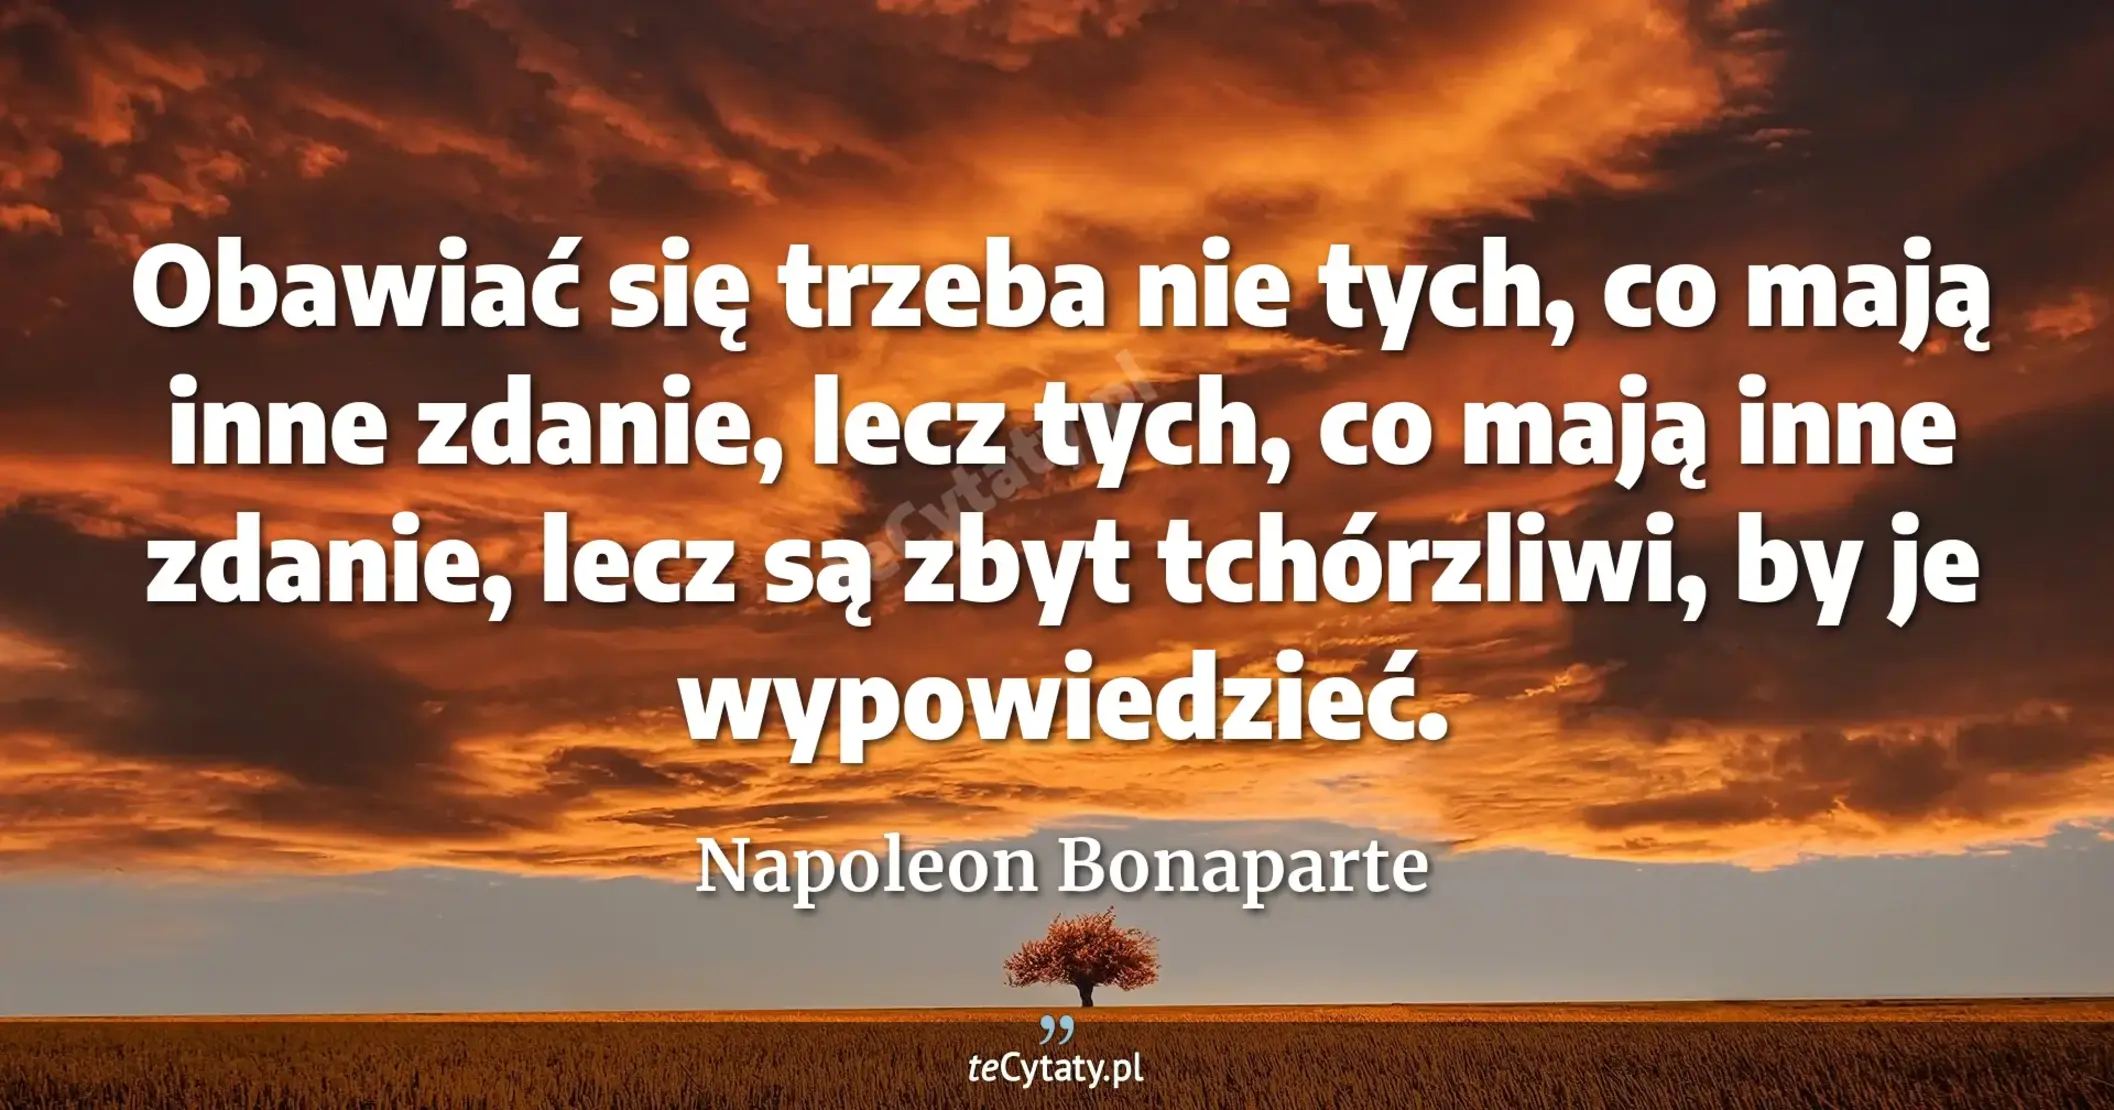 Obawiać się trzeba nie tych, co mają inne zdanie, lecz tych, co mają inne zdanie, lecz są zbyt tchórzliwi, by je wypowiedzieć. - Napoleon Bonaparte